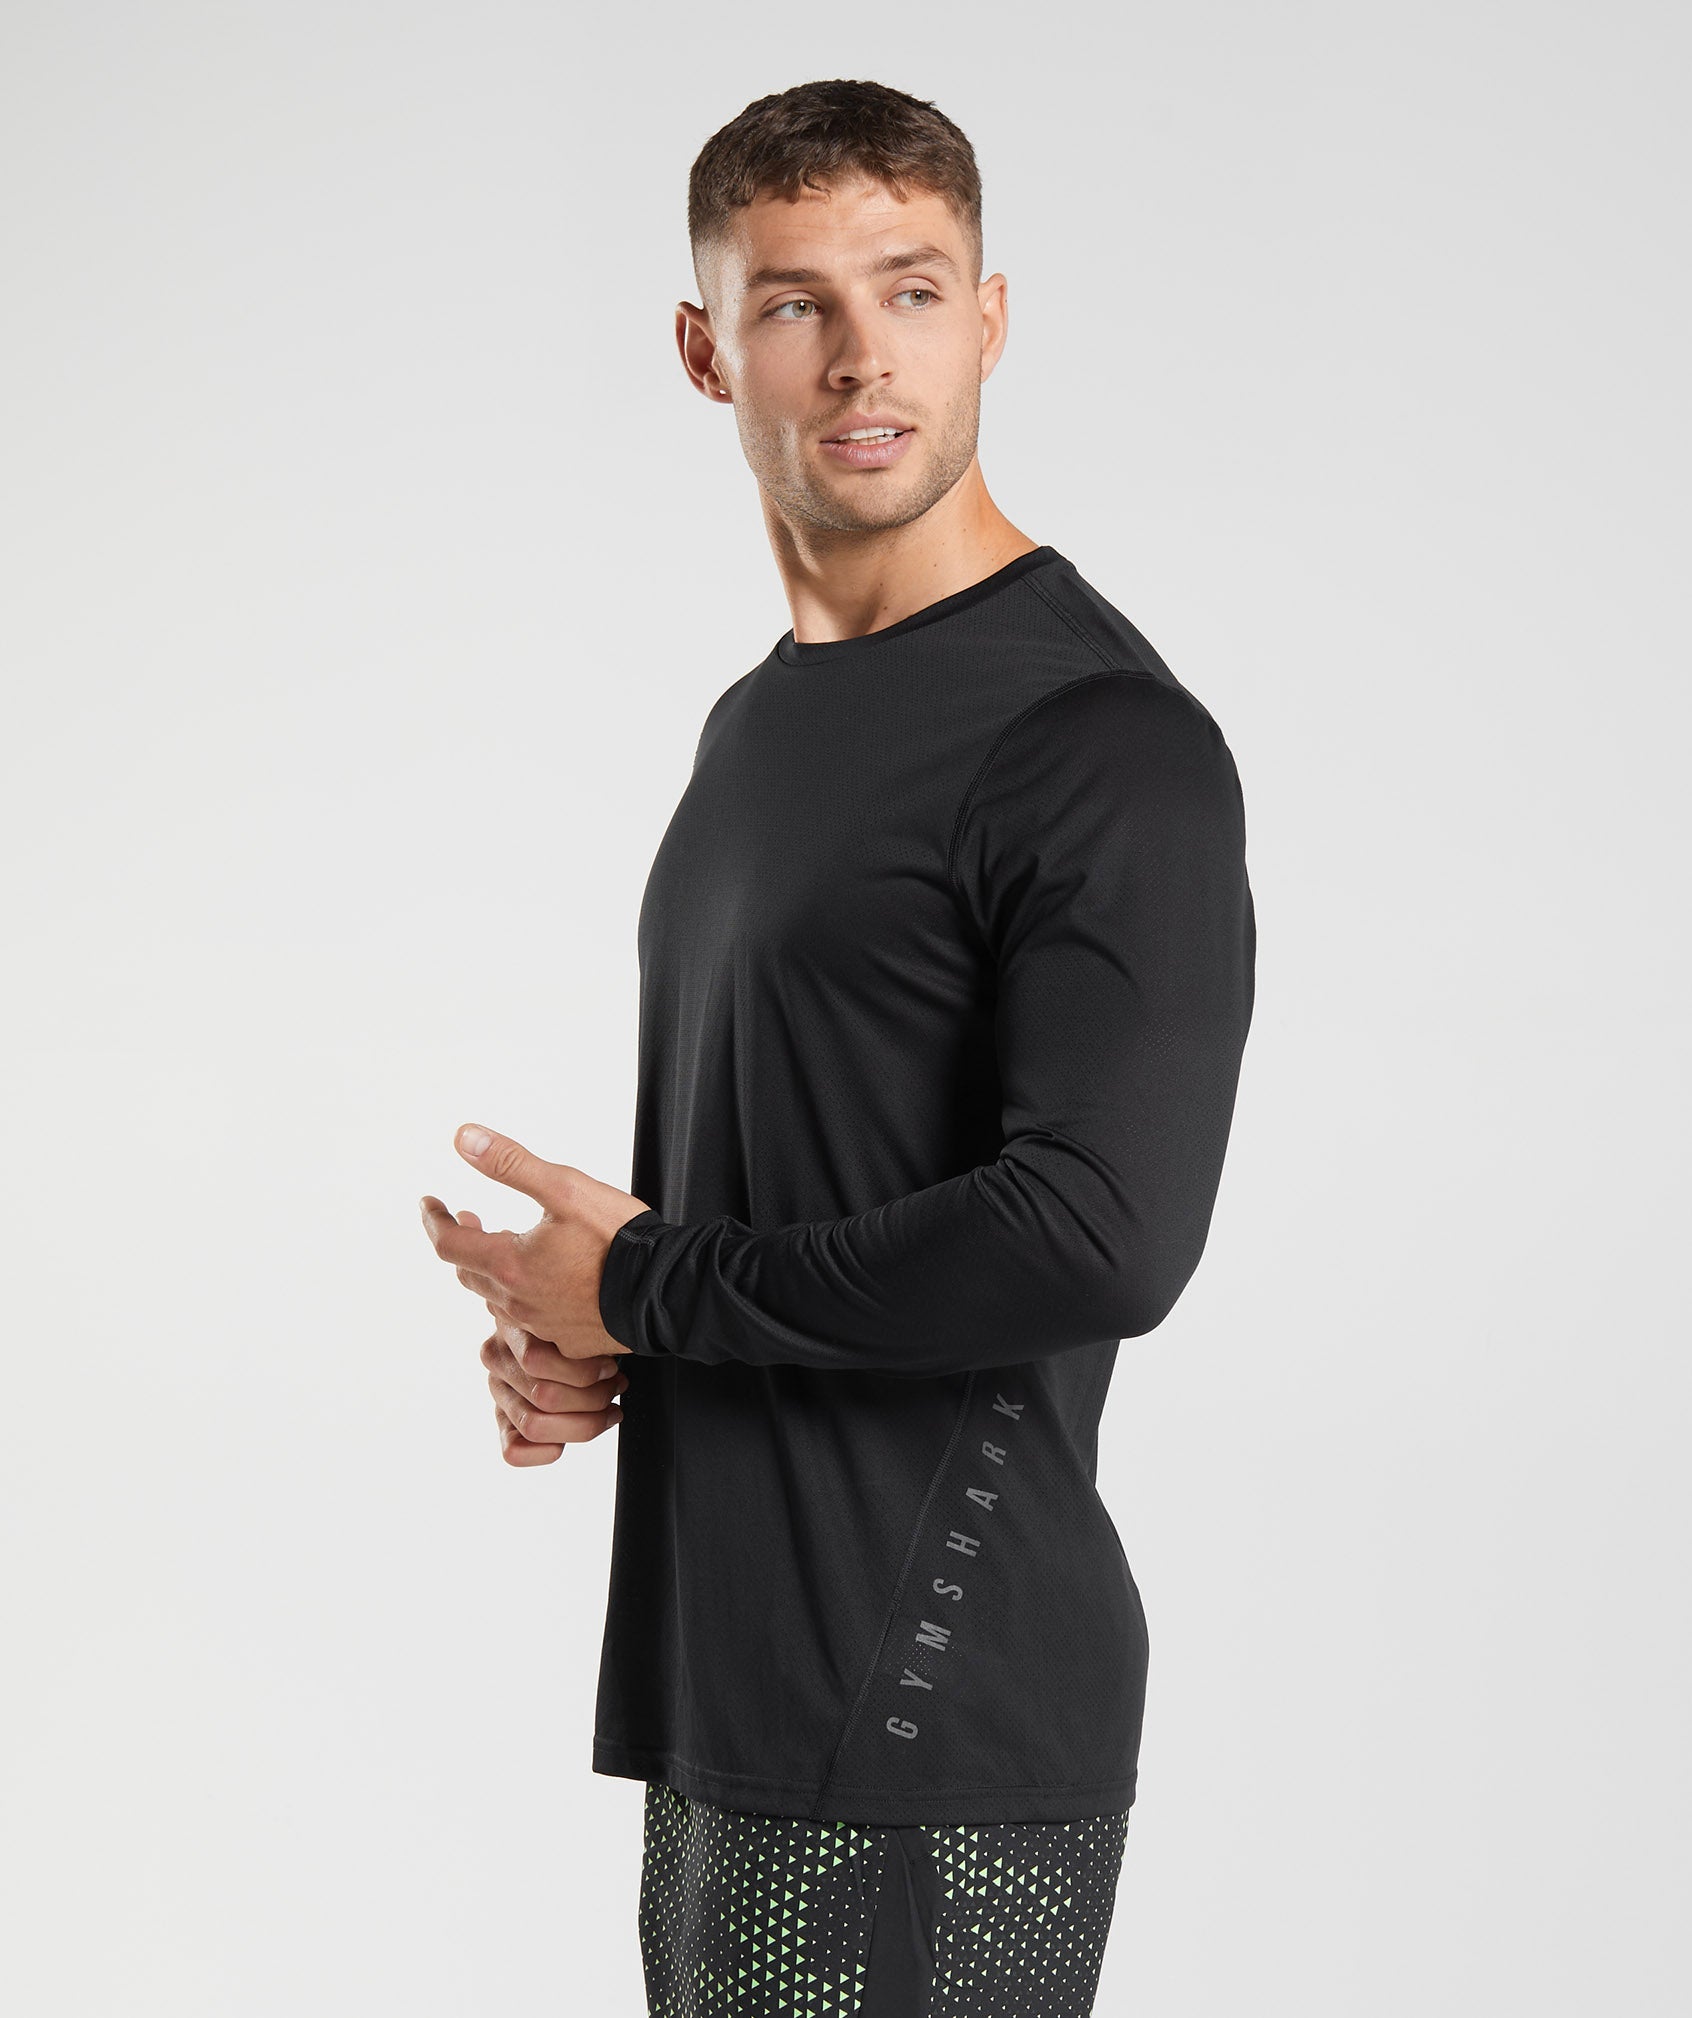 Gymshark Men's Aspect Lightweight Seamless Long Sleeve T-Shirt, Black